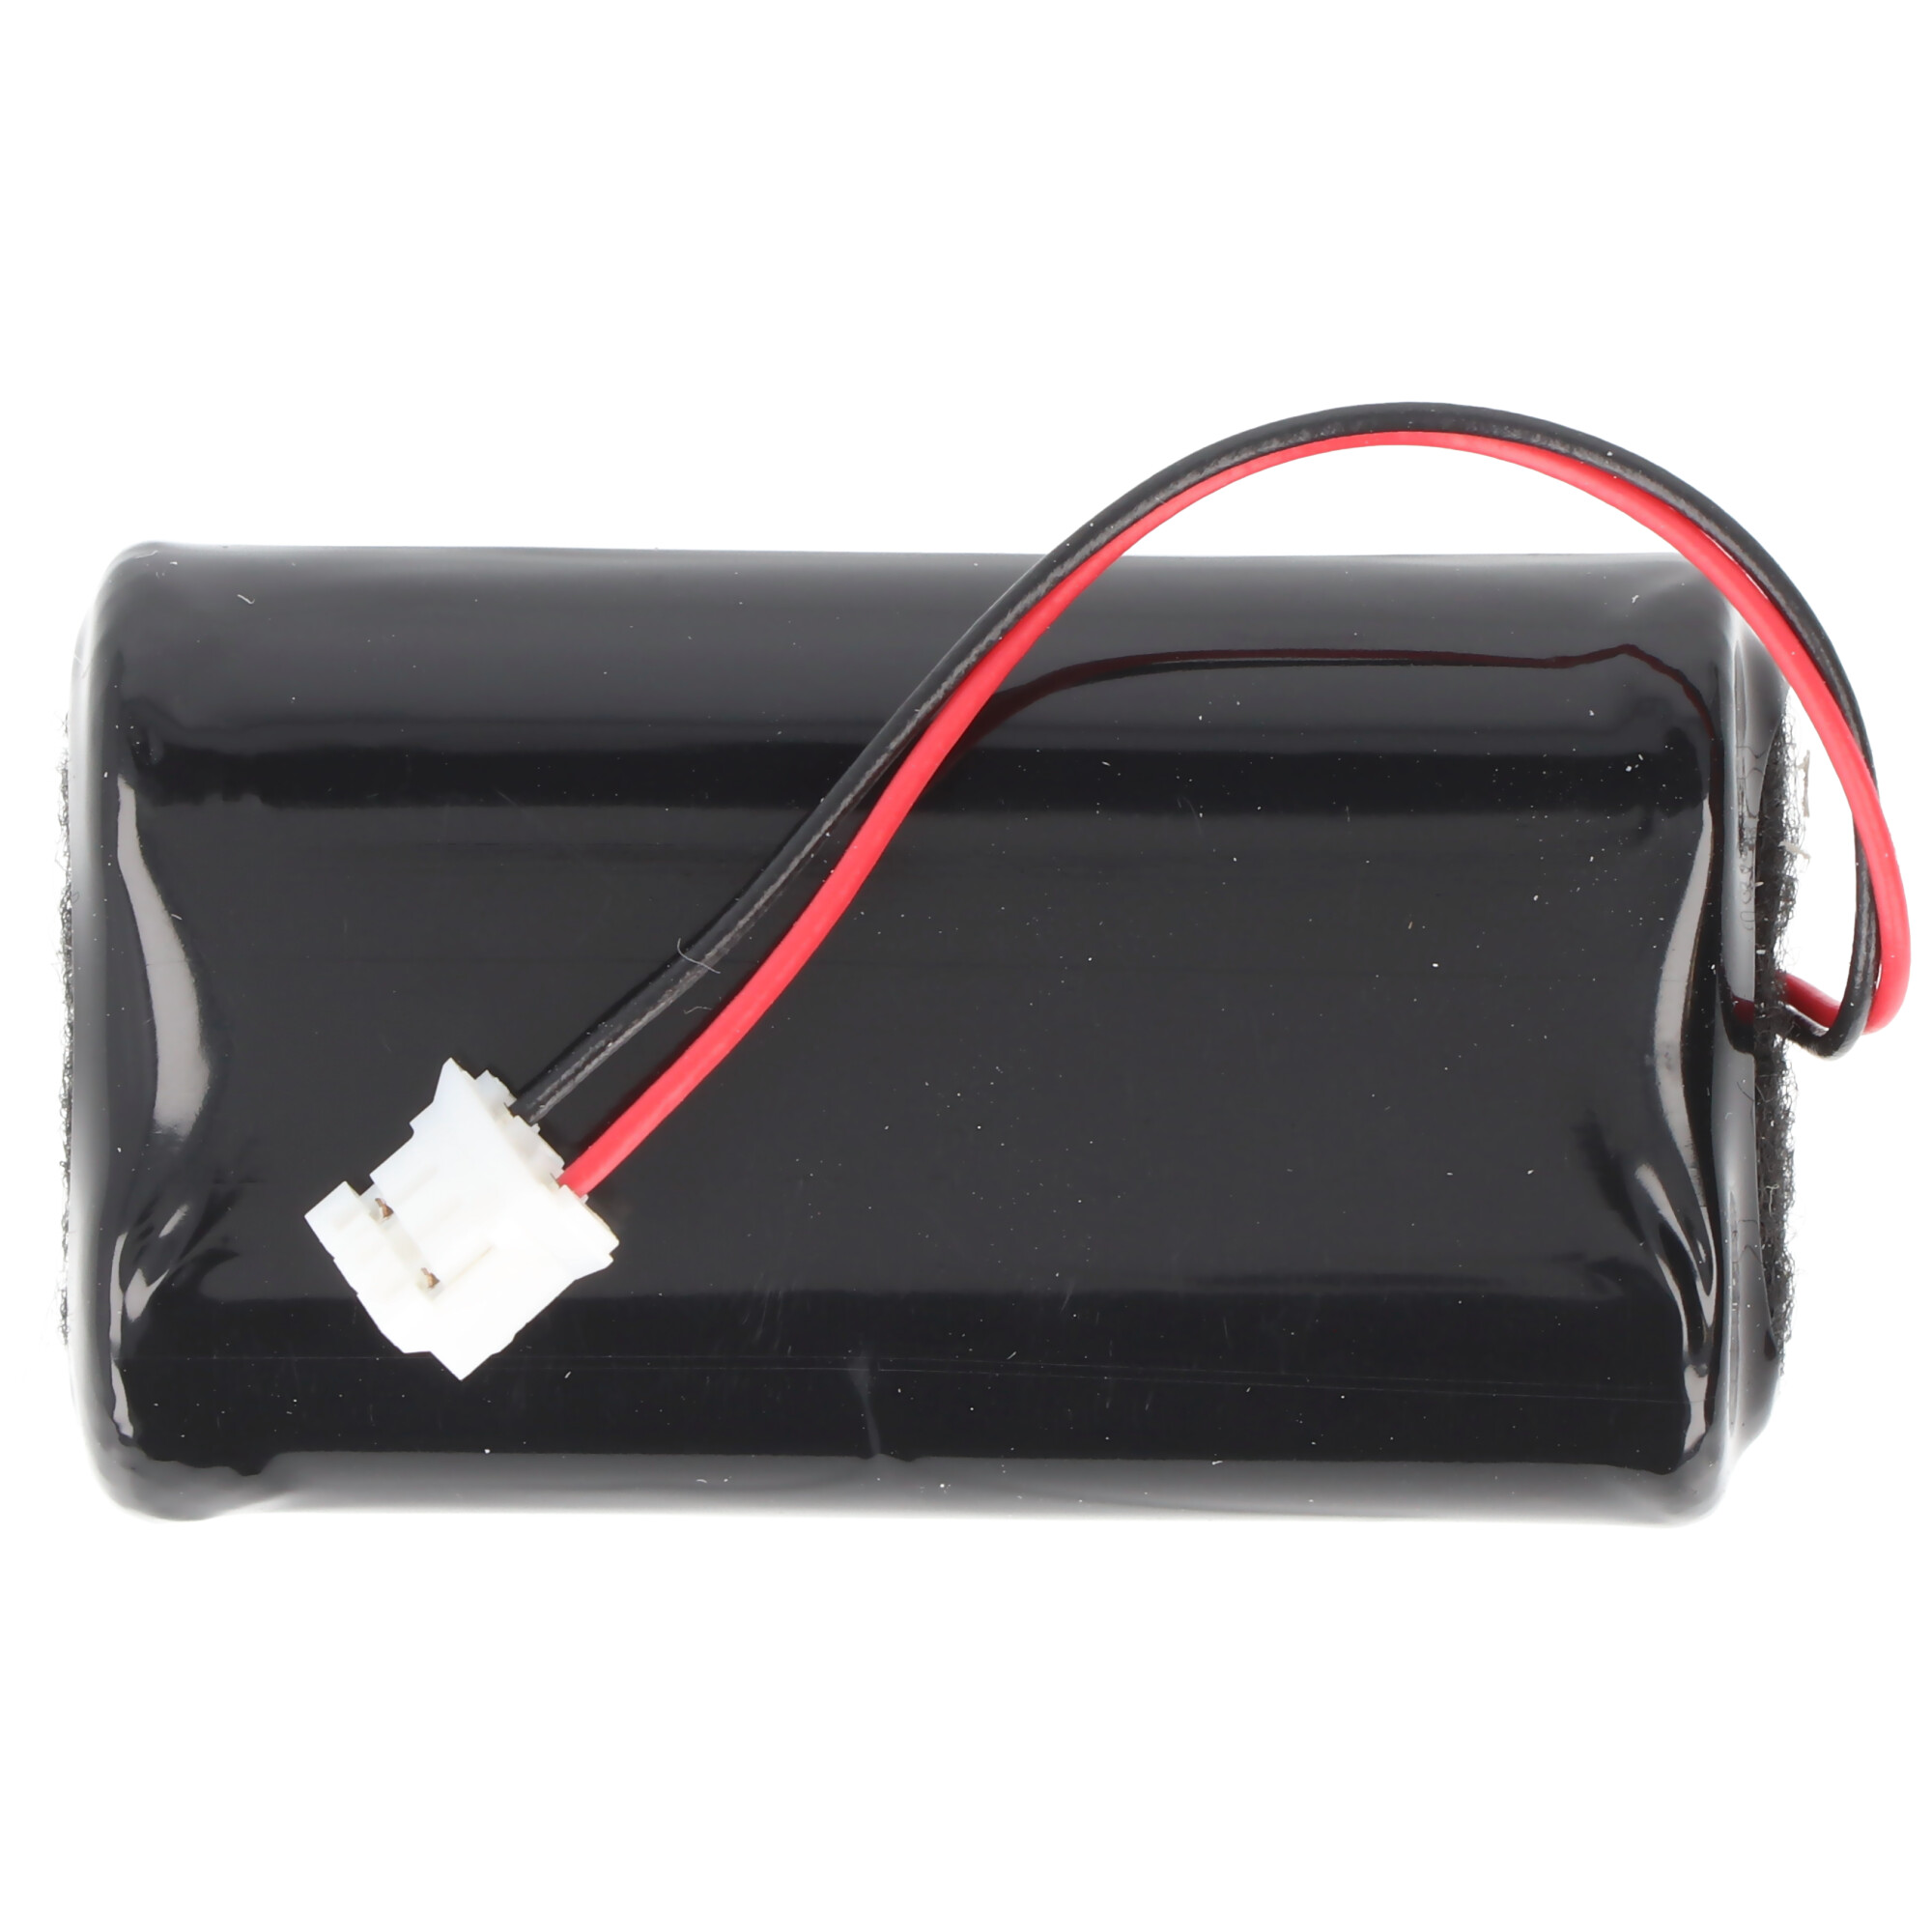 CR-4148 Batteriepack, für Notifier Sicherheitssysteme CR-4148, Batterie für FDKM 2100R und FDKM 2100B